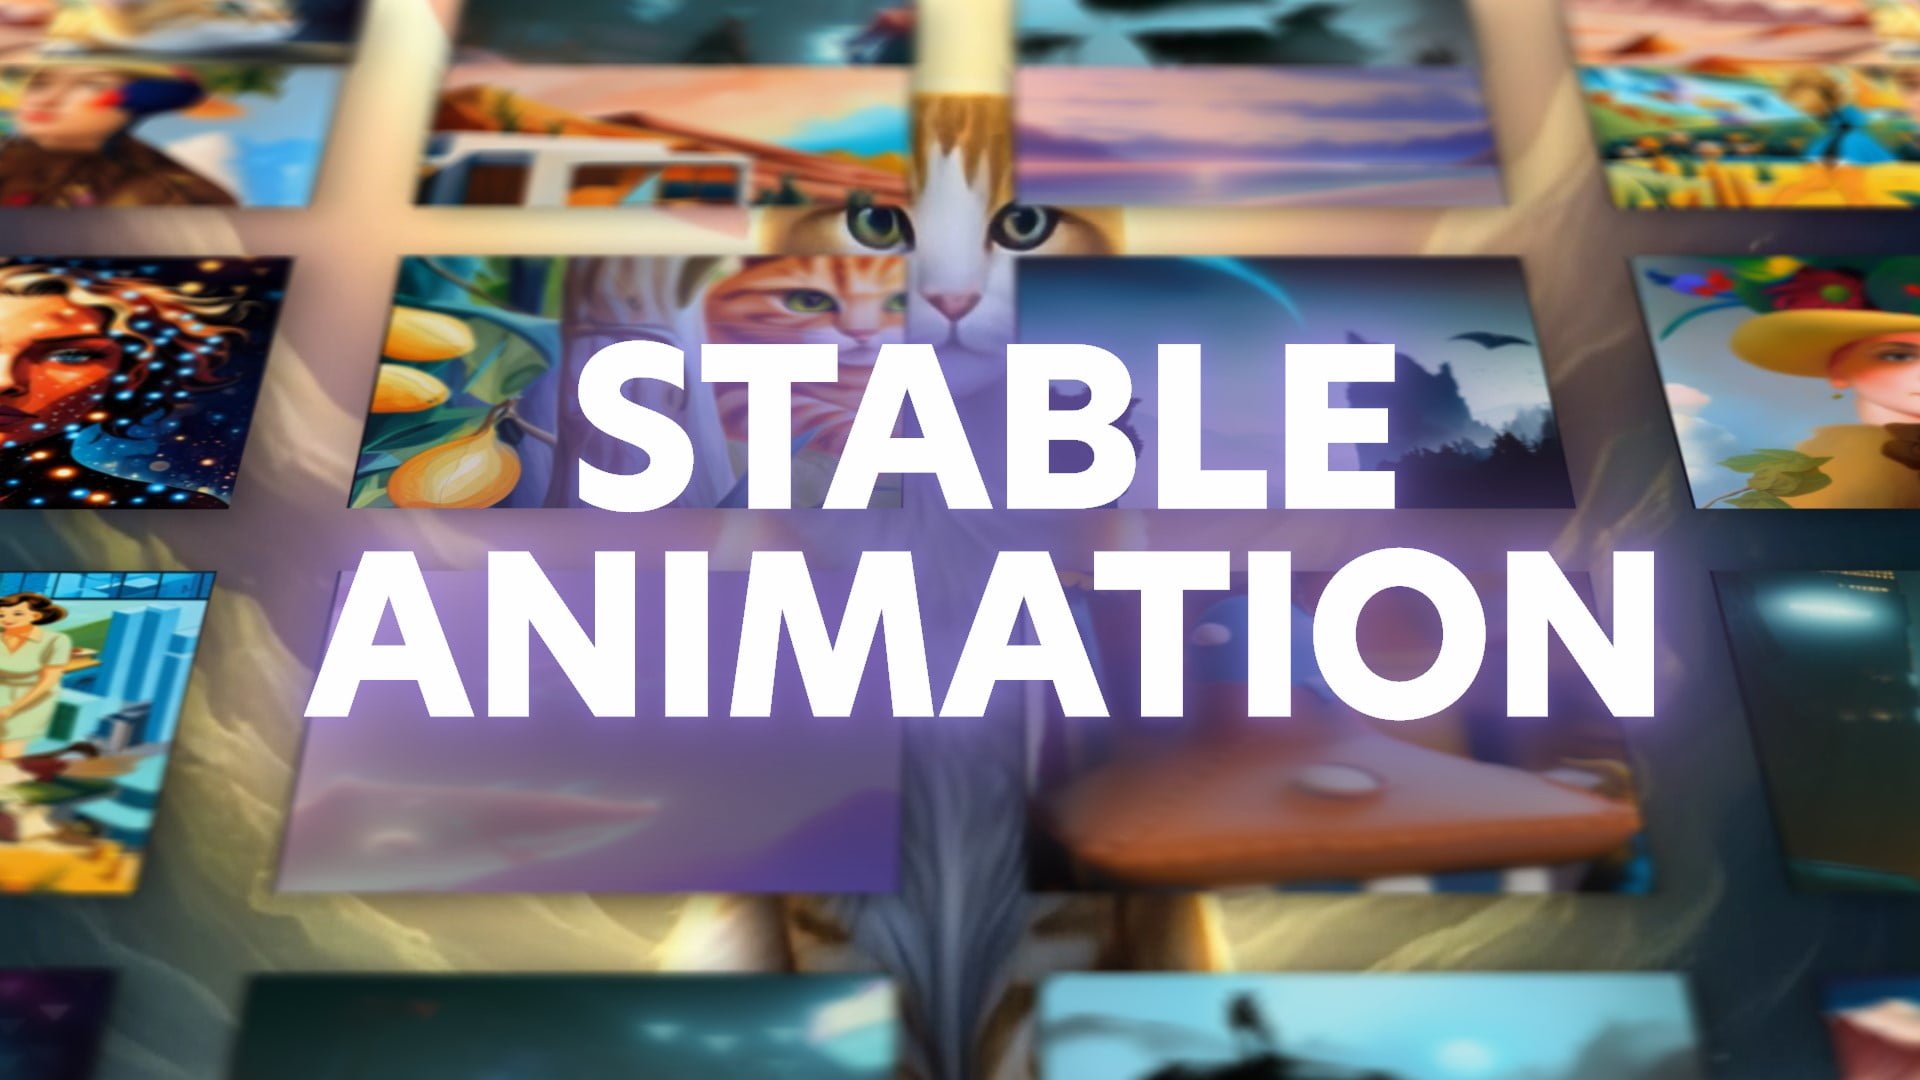 Stable Animation: Stability AI bringt Bewegung in Bilder